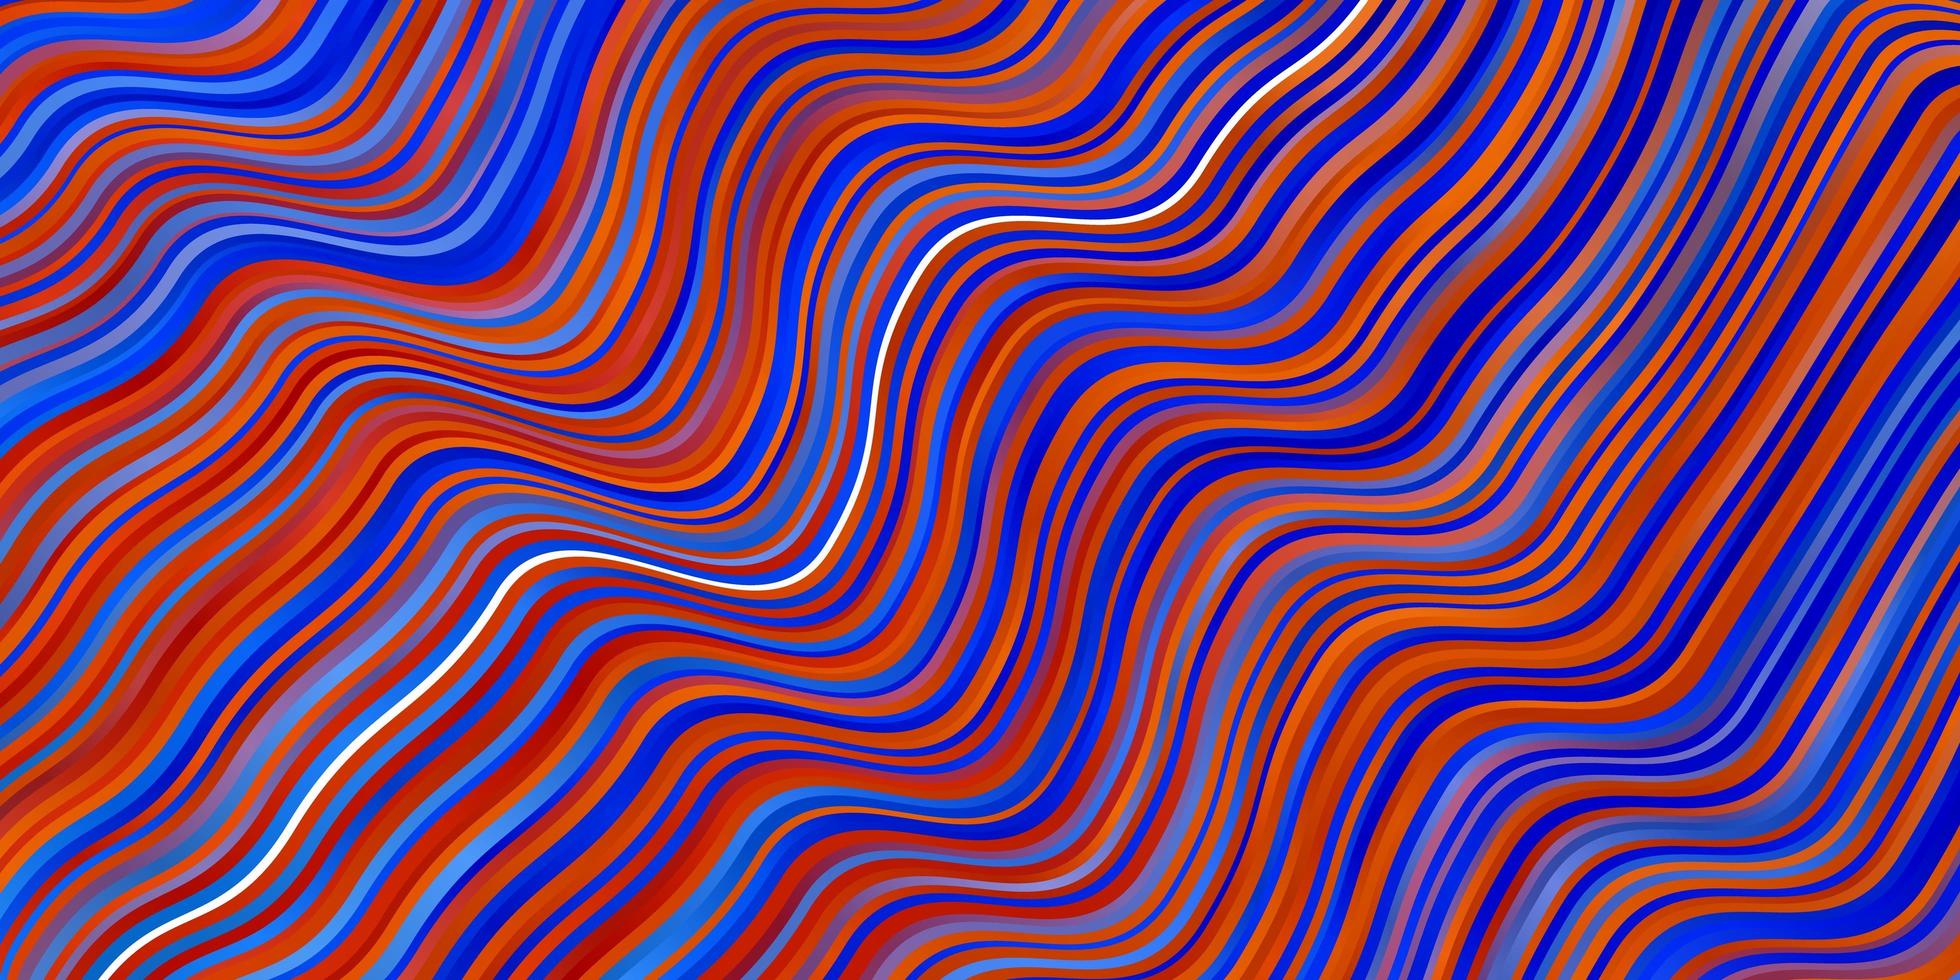 ljusblå, röd vektorbakgrund med kurvor. vektor